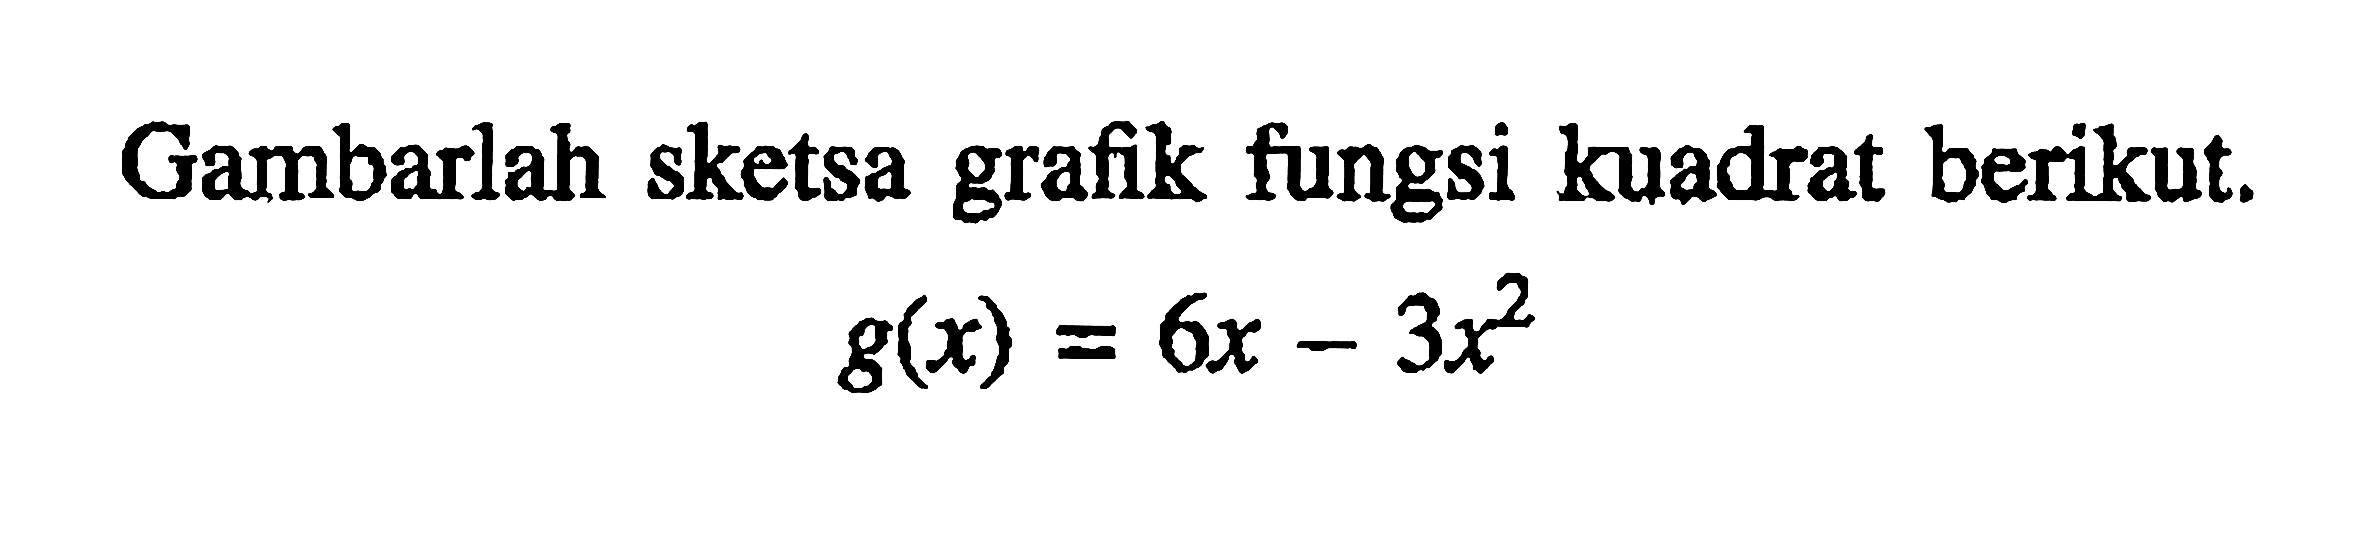 Gambarlah sketsa grafik fungsi kuadrat berikut. g(x)= 6x-3x^2